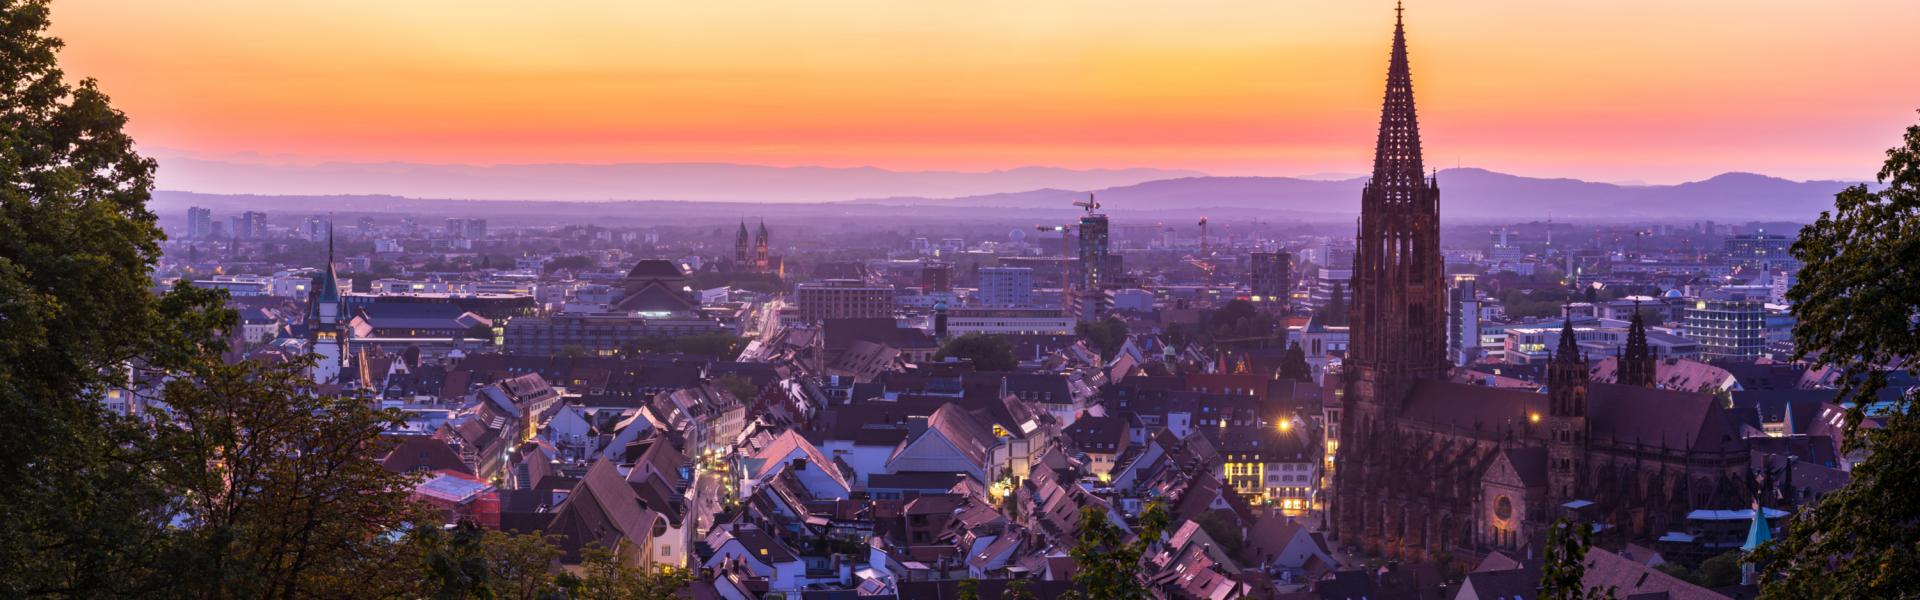 Ferienwohnungen & Ferienhäuser für Urlaub in Freiburg im Breisgau - Casamundo